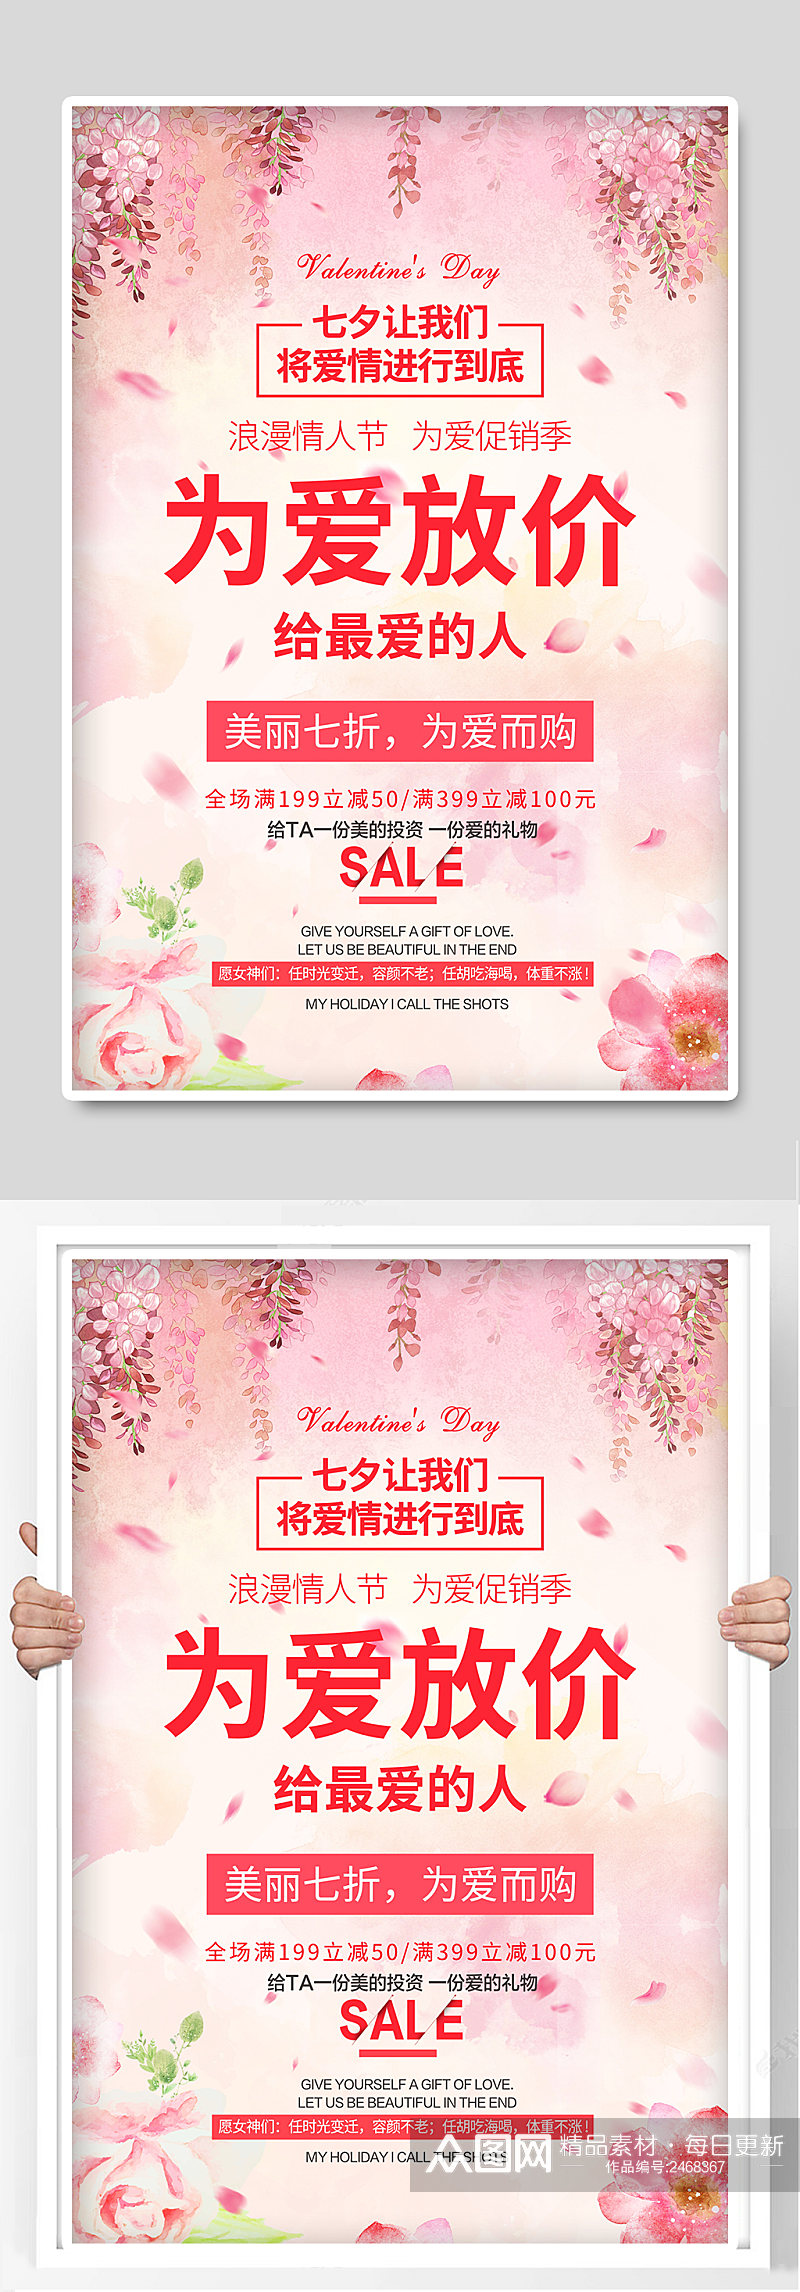 七夕情人节宣传海报展板素材